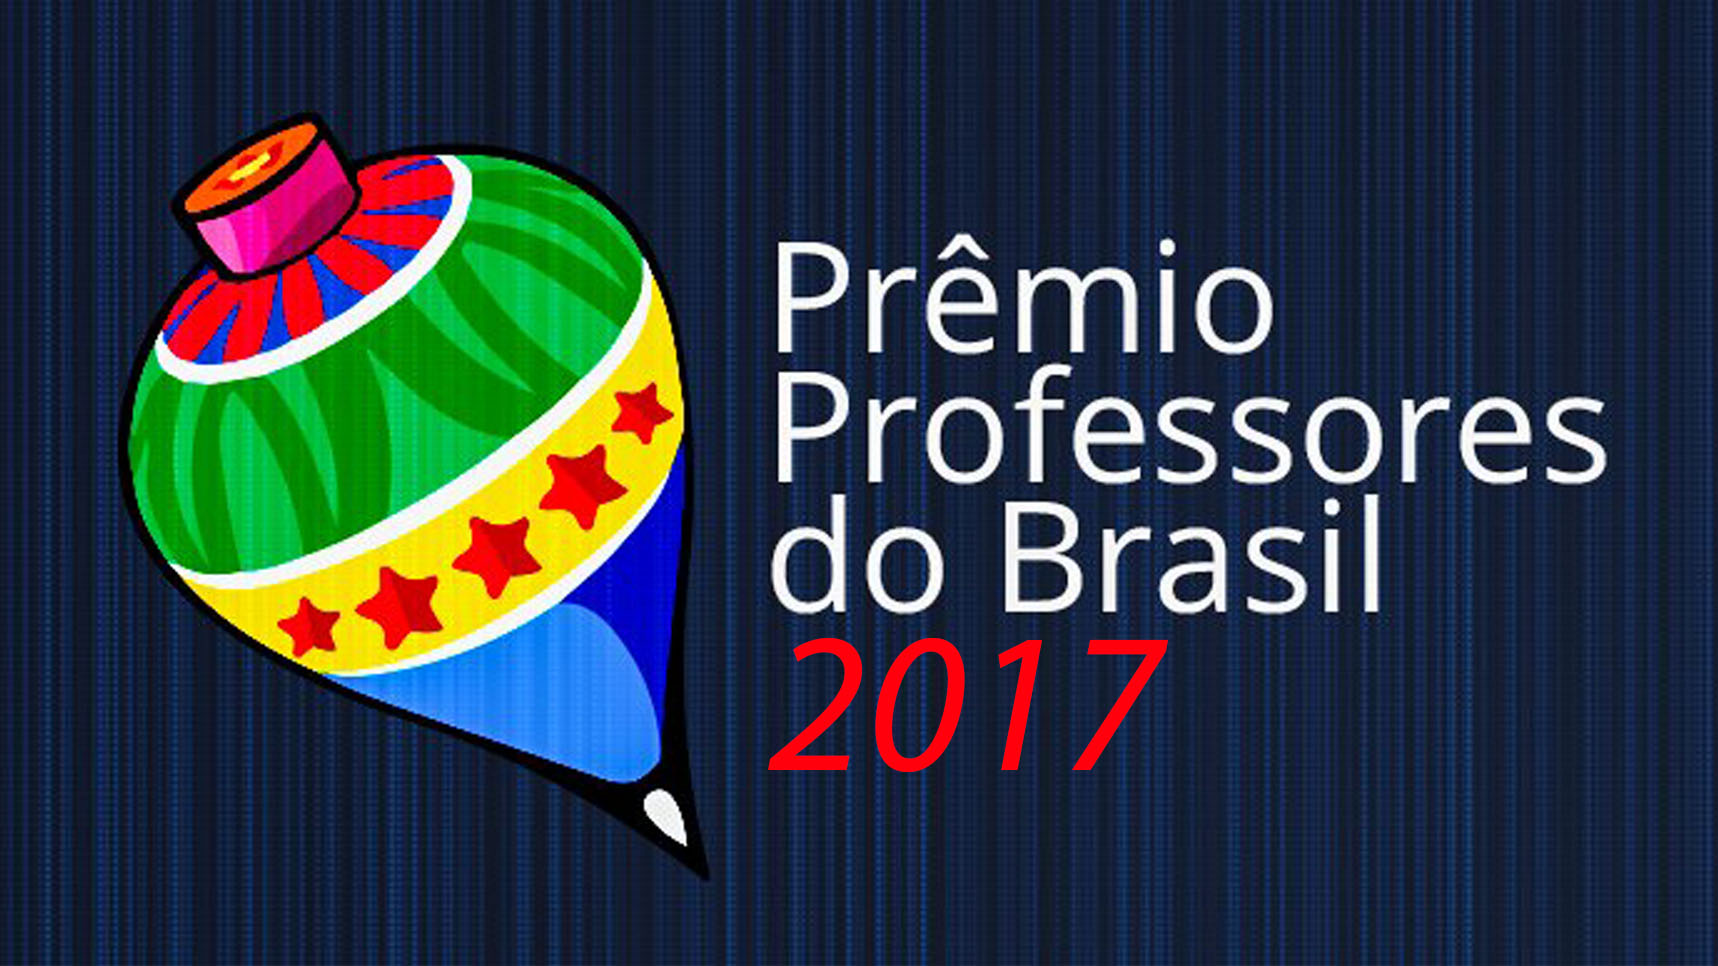 Professores do Brasil: inscrições on-line acontecem até dia 25 de agosto